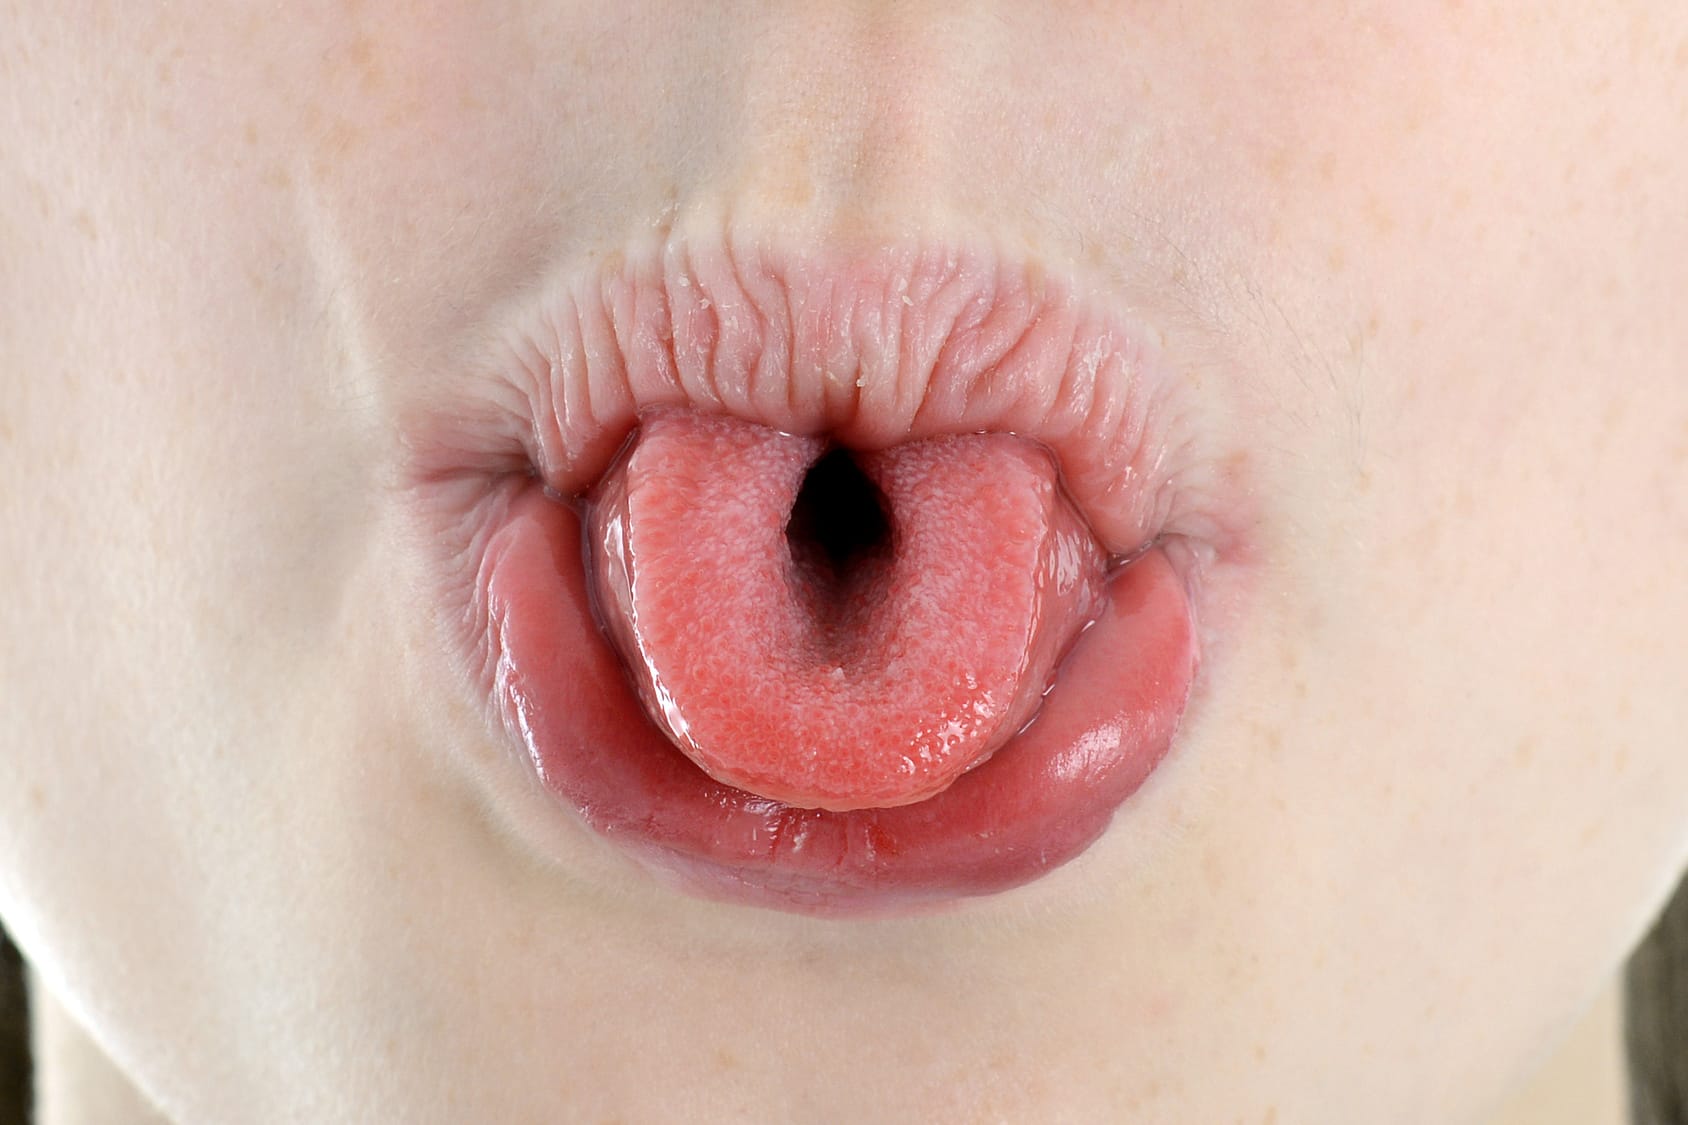 Zunge rollen – Ist diese Fähigkeit genetisch angelegt?